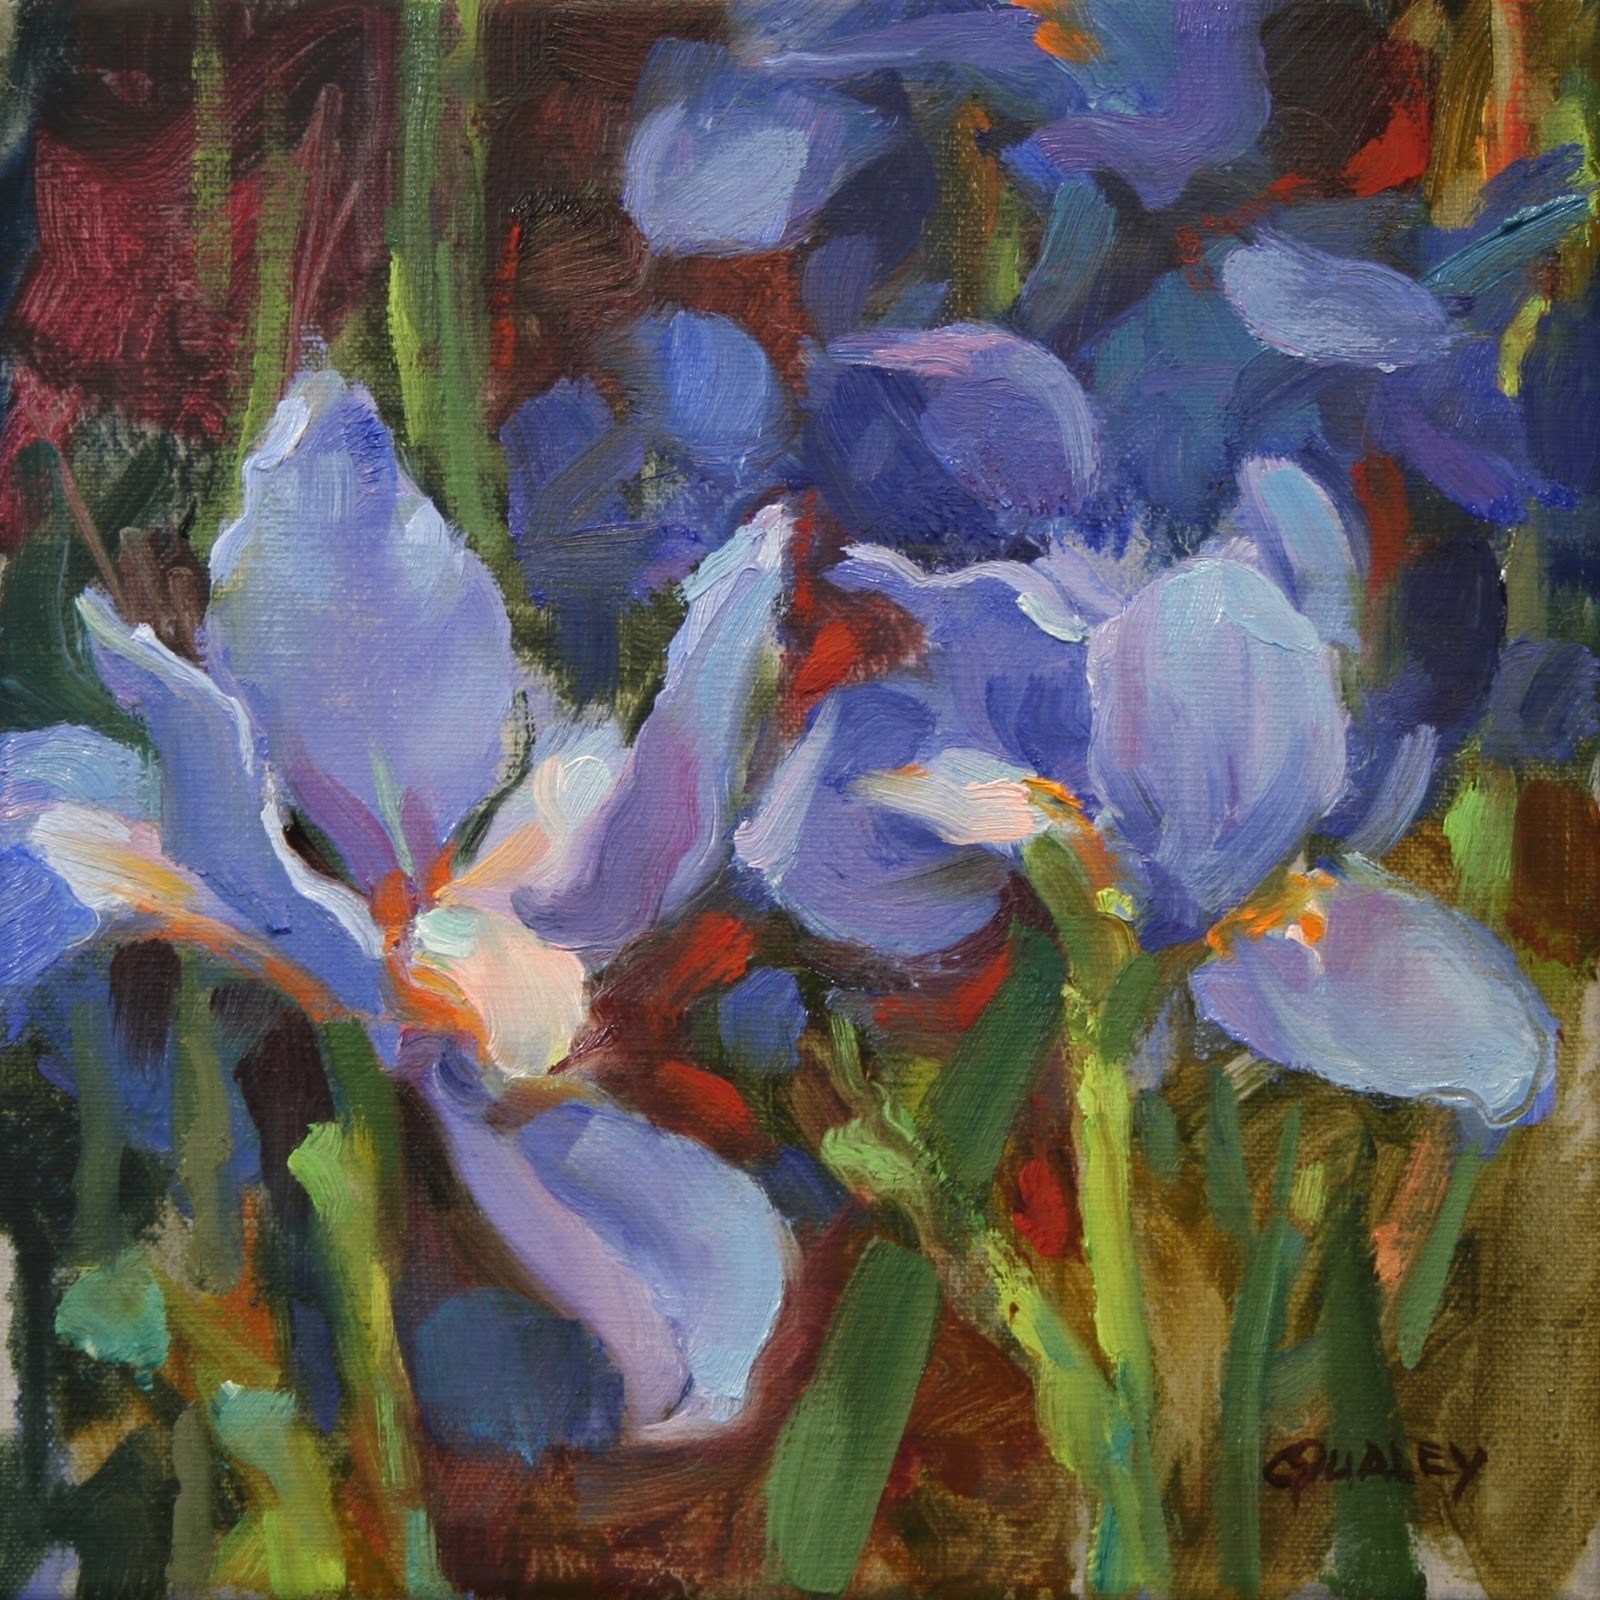 Sara Qualey Paintings: Flowers, Flowers, Flowers...